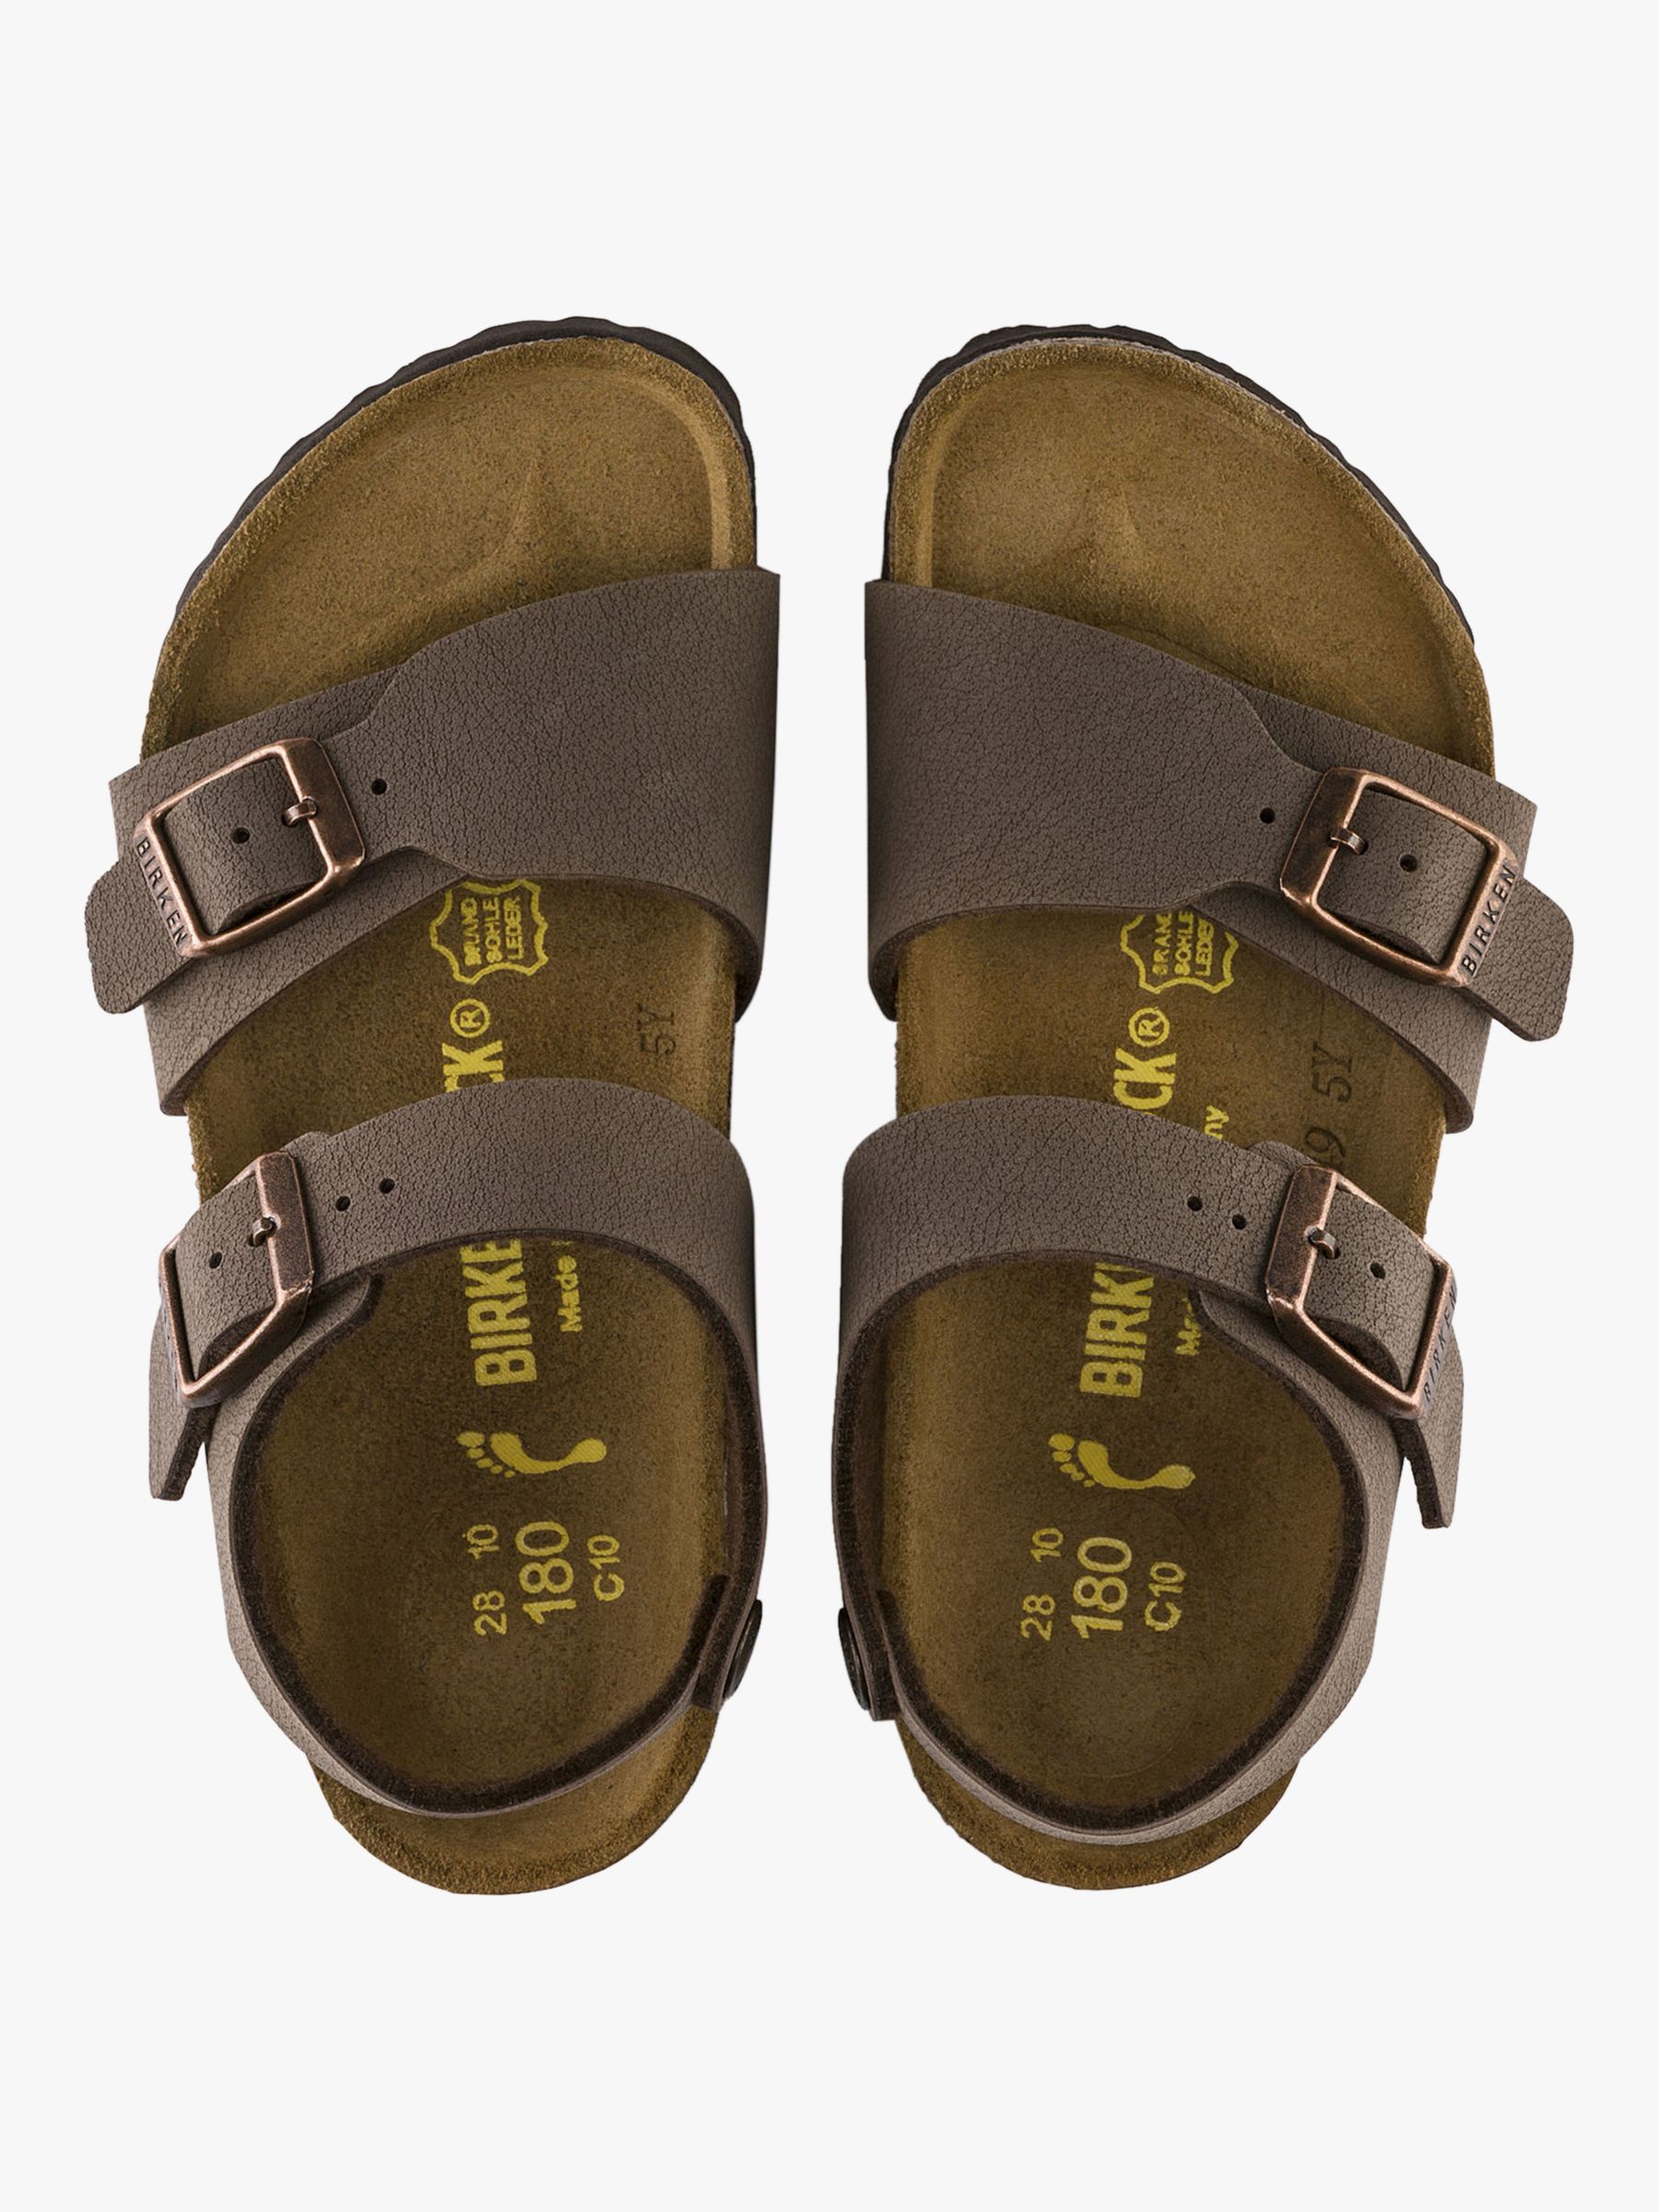 Buy Birkenstock Kids' Nubuck Sandals, Mocha Online at johnlewis.com